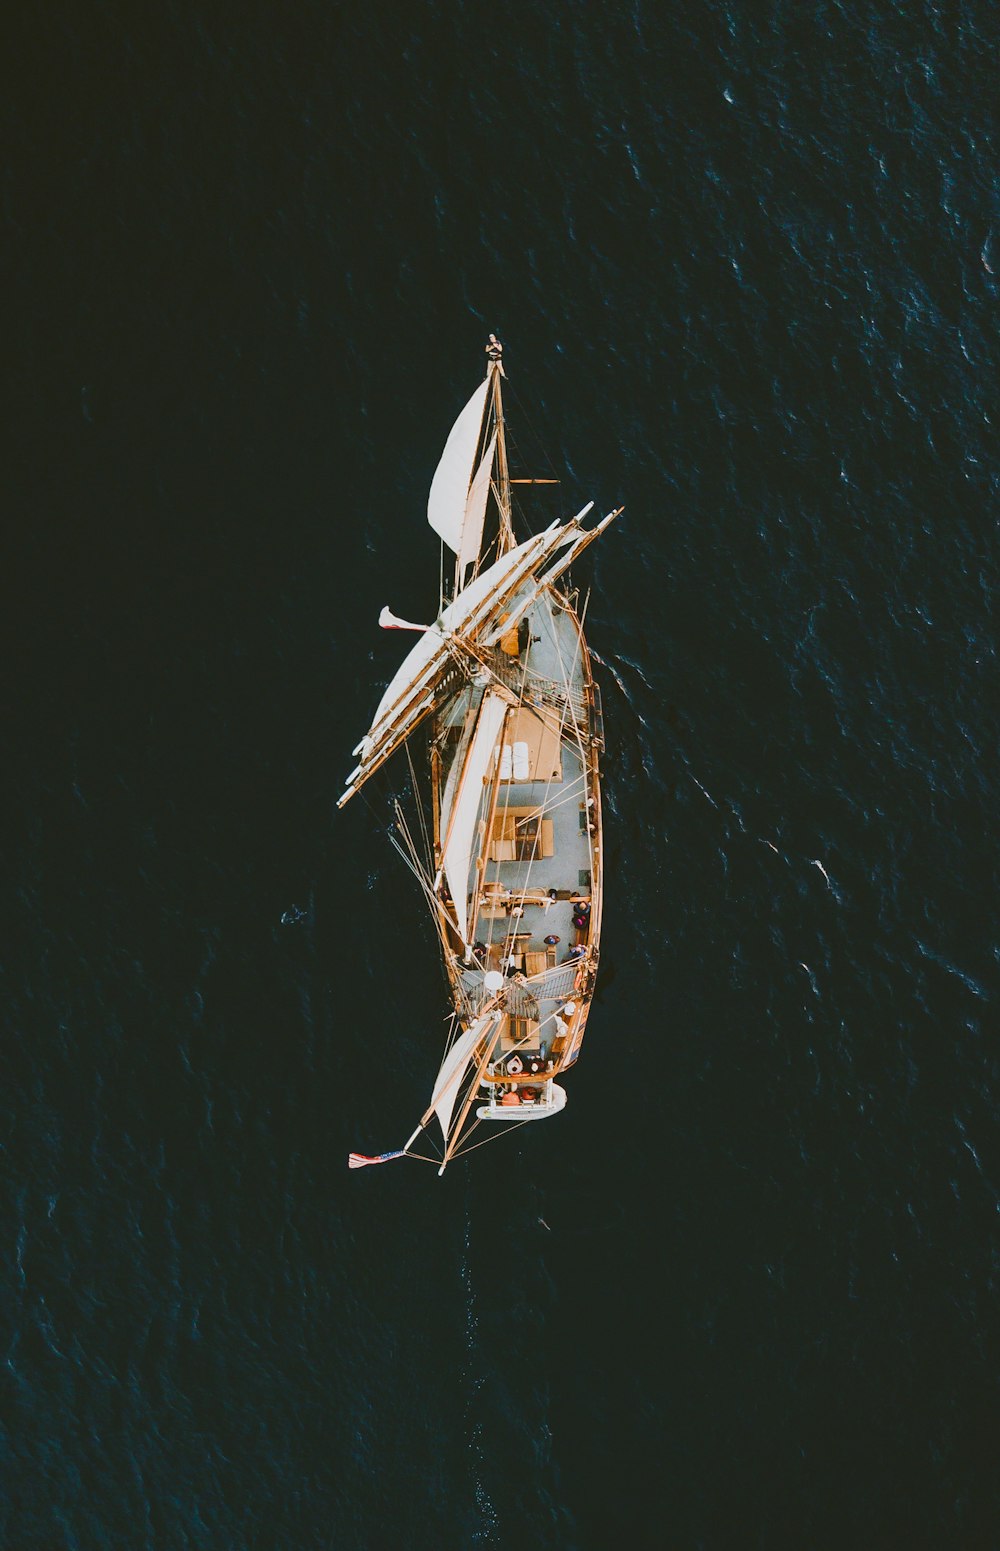 Fotografia aérea do navio galeão marrom no corpo d'água